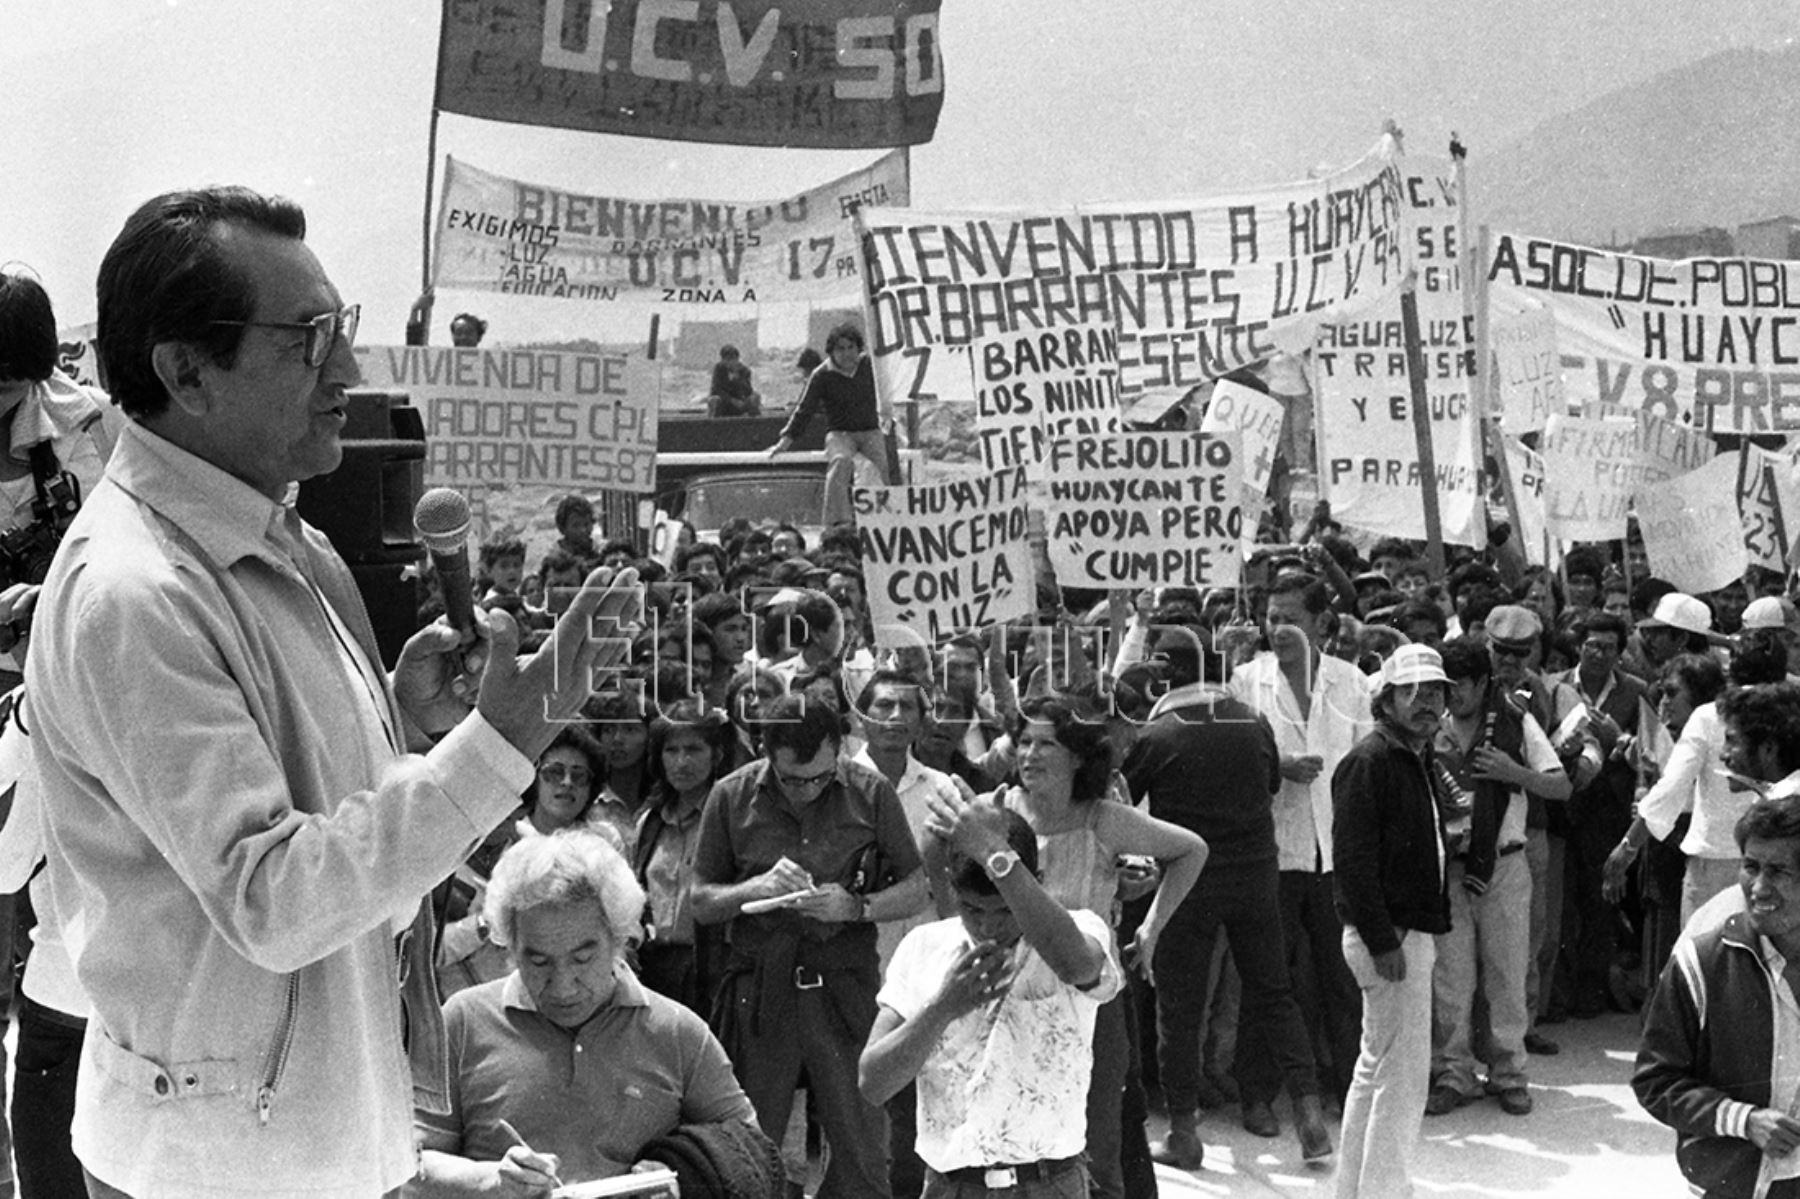 Lima - 10 agosto 1986 / Multitudinaria bienvenida al alcalde de Lima, Alfonso Barrantes Lingán, en Huaycán. Foto: Archivo Histórico de EL PERUANO / Pavel Marrul